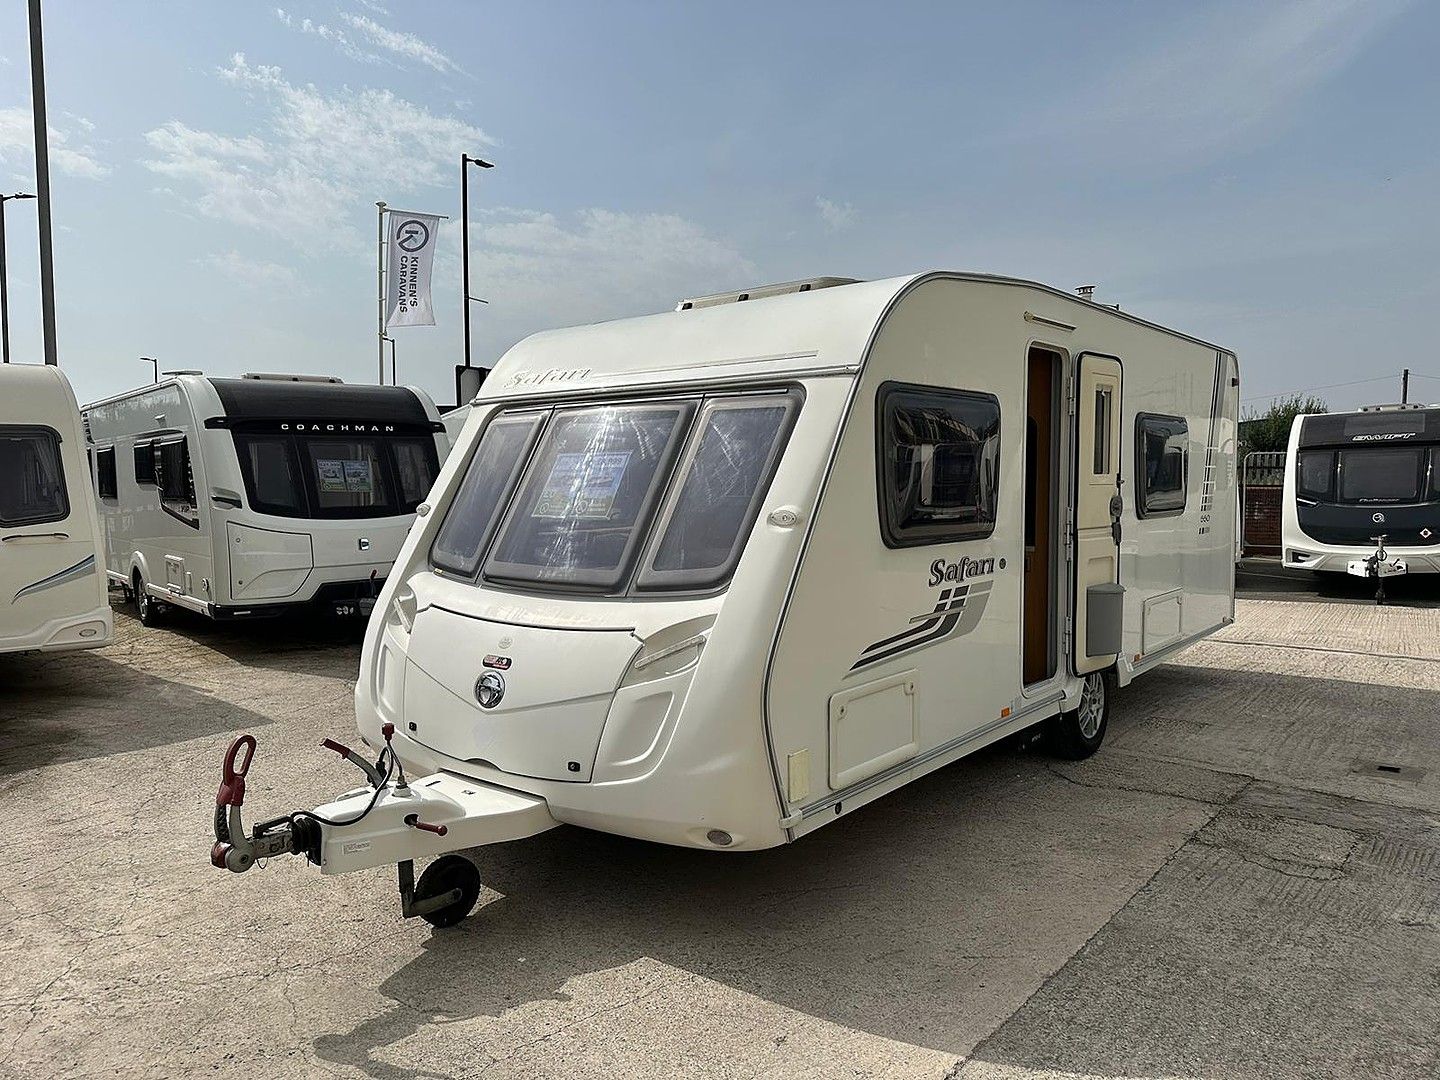 SwiftSafari 550Touring Caravan for sale